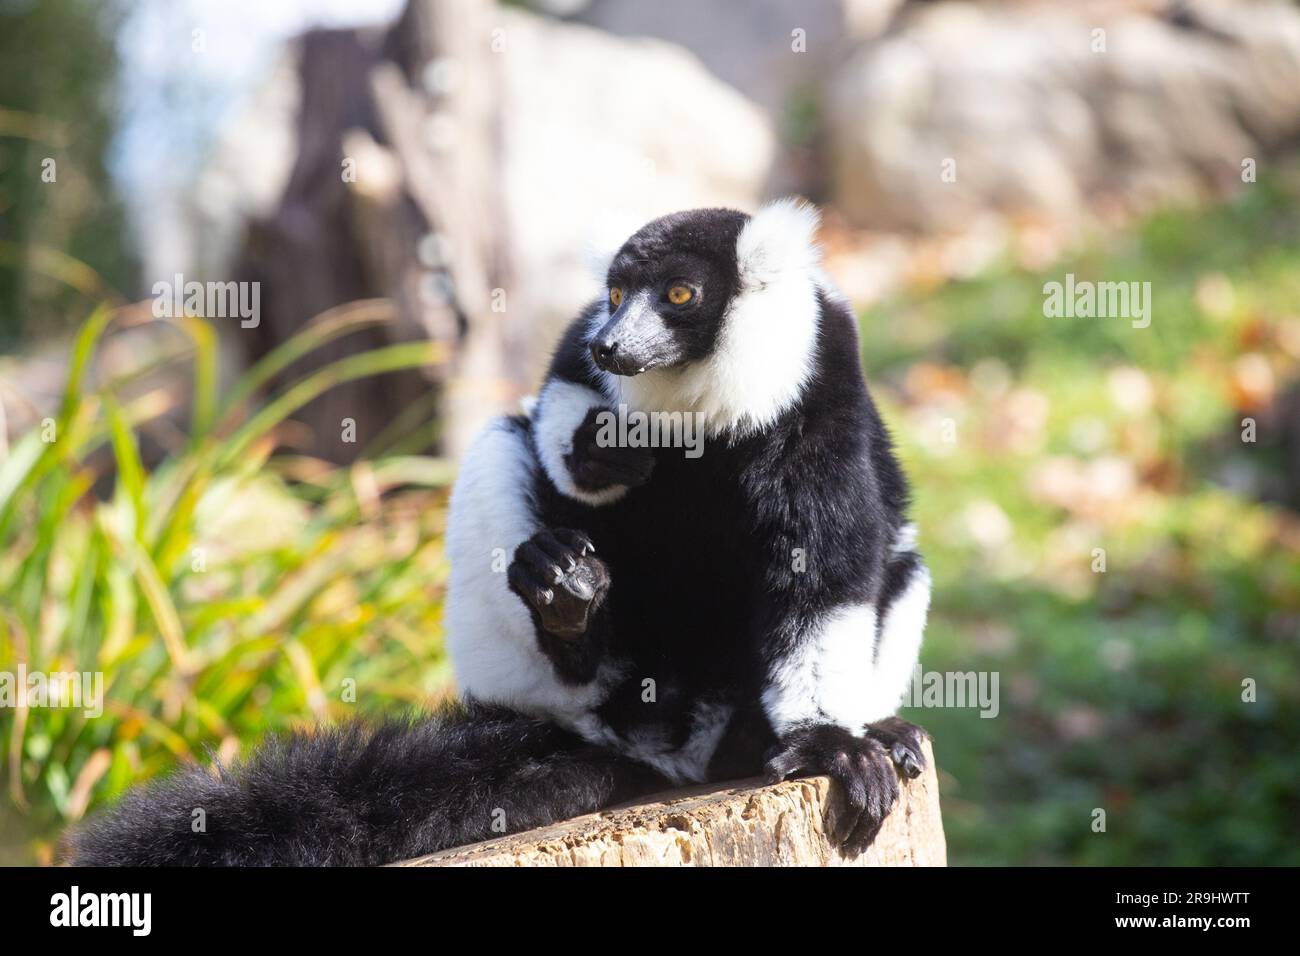 Black and White Ruffed Lemur Stock Photo